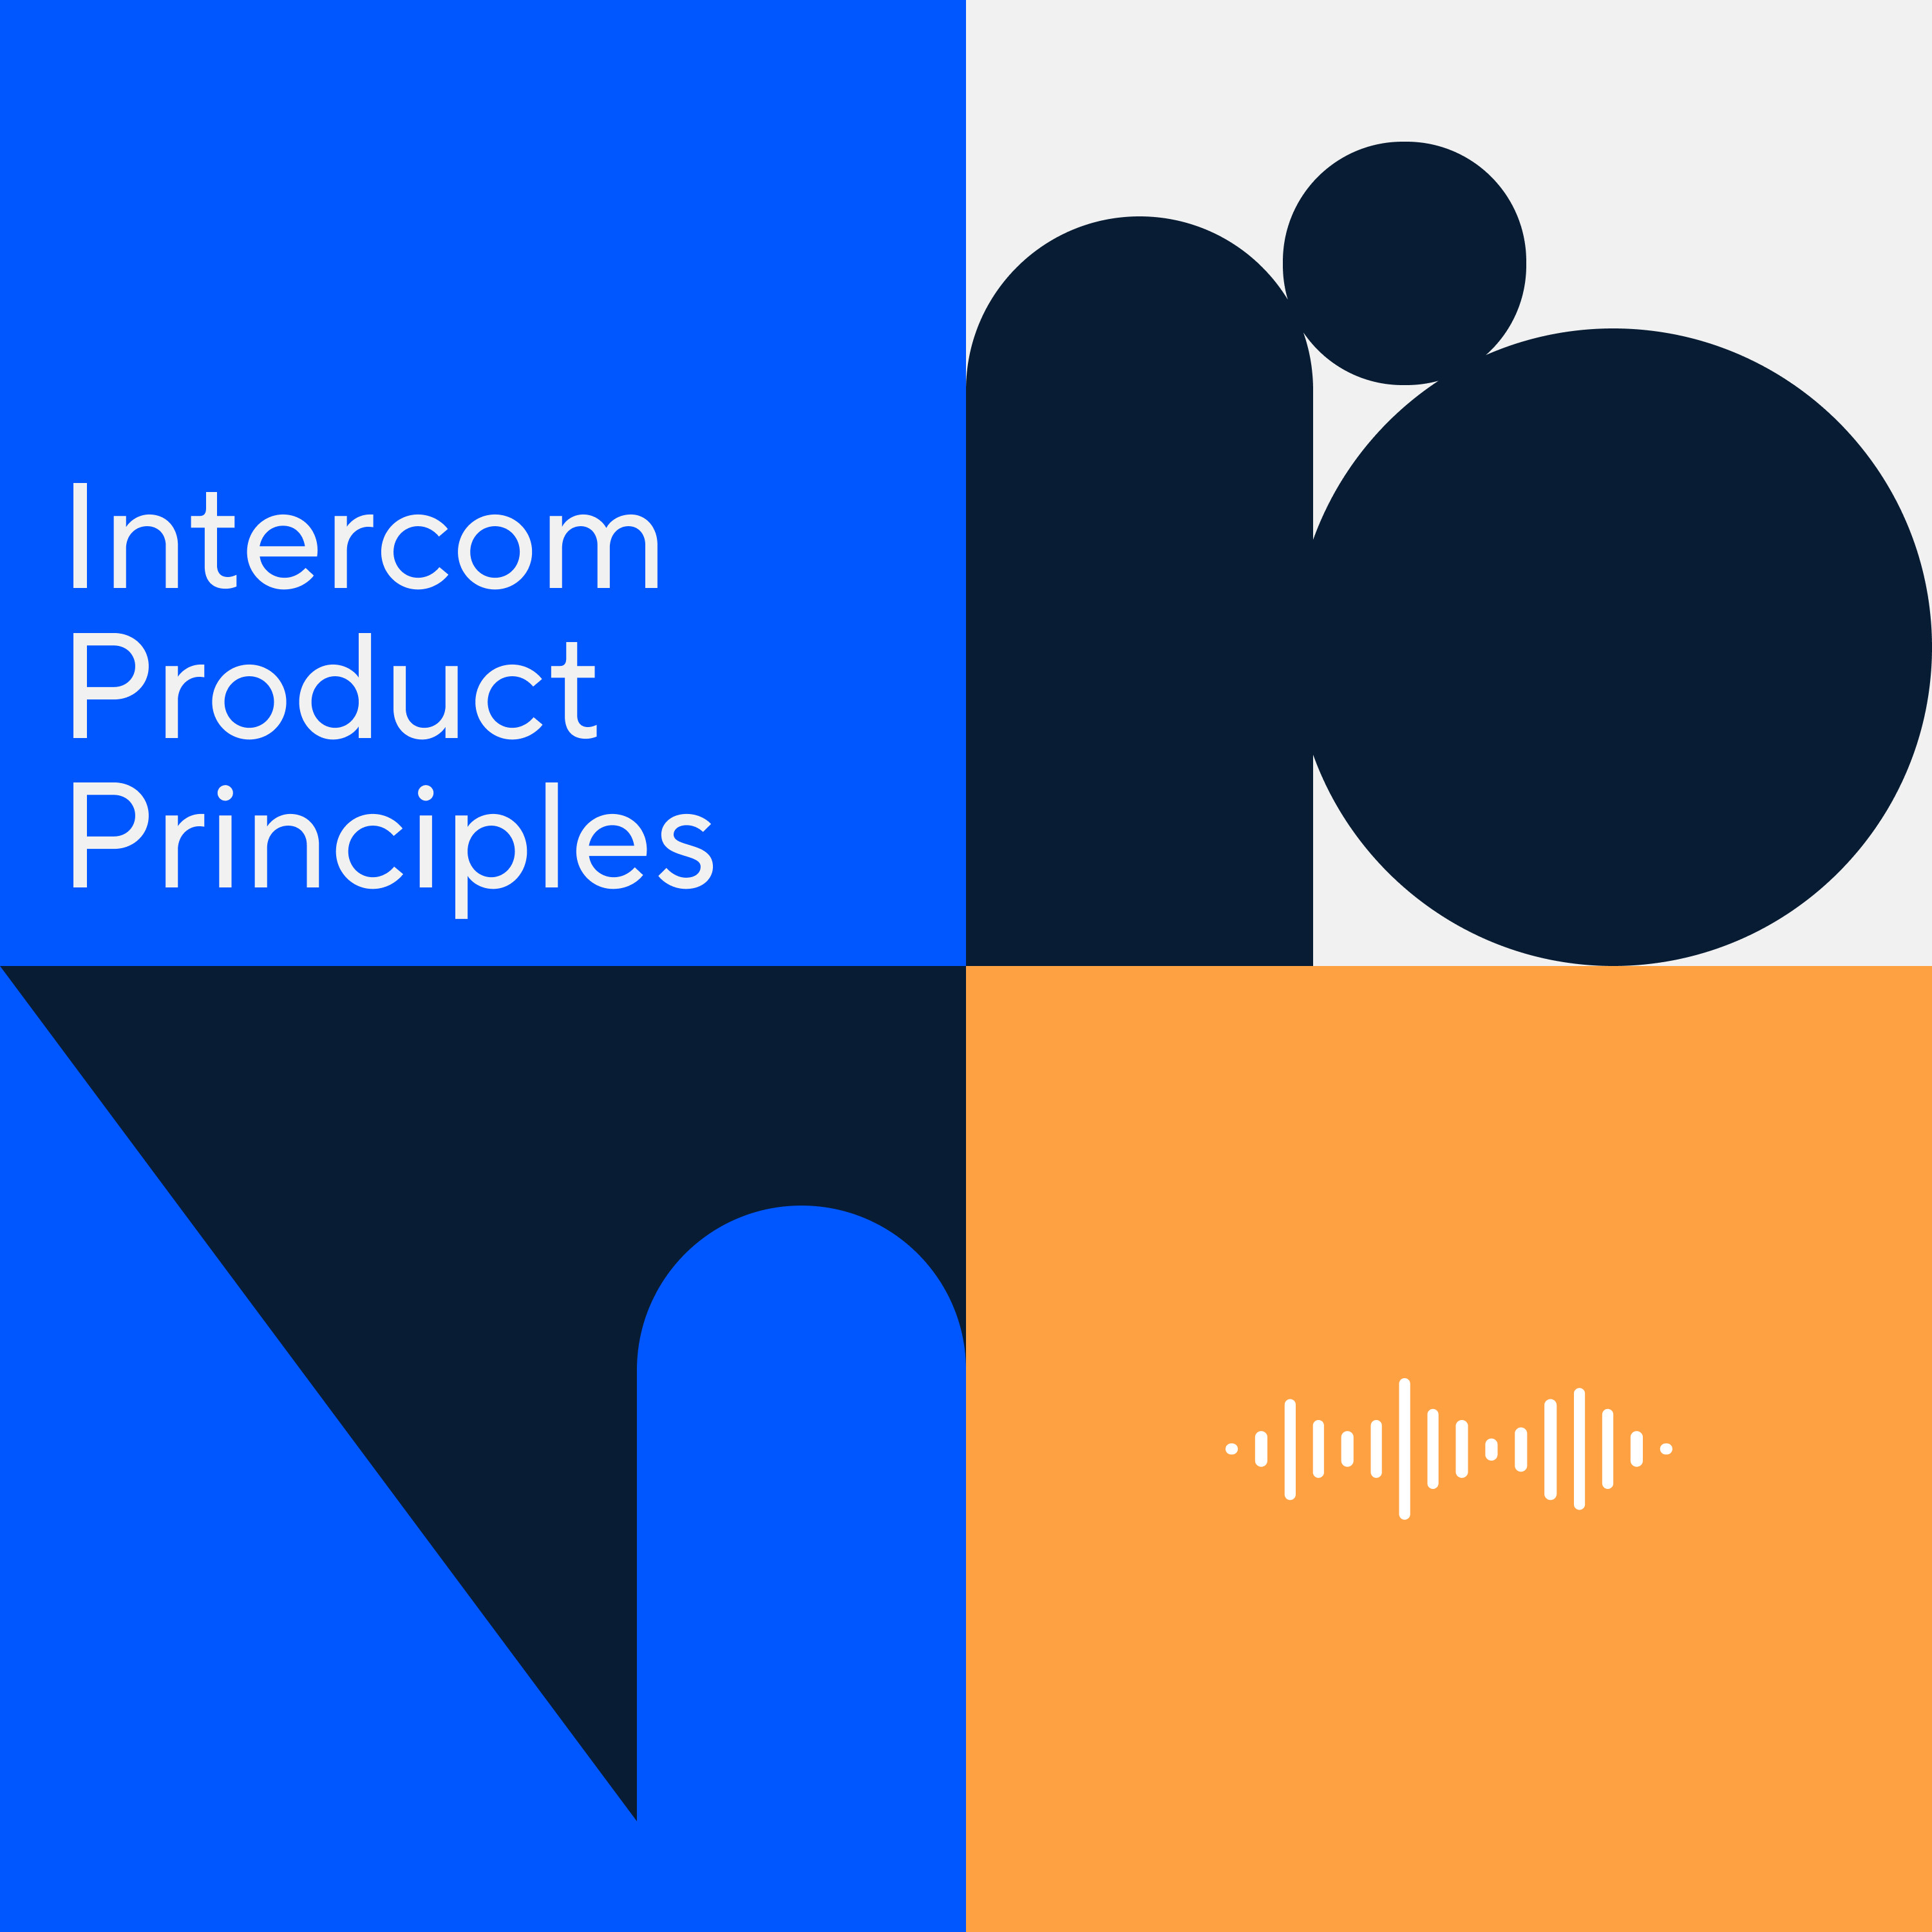 Let's talk principles: Exploring how we build product at Intercom